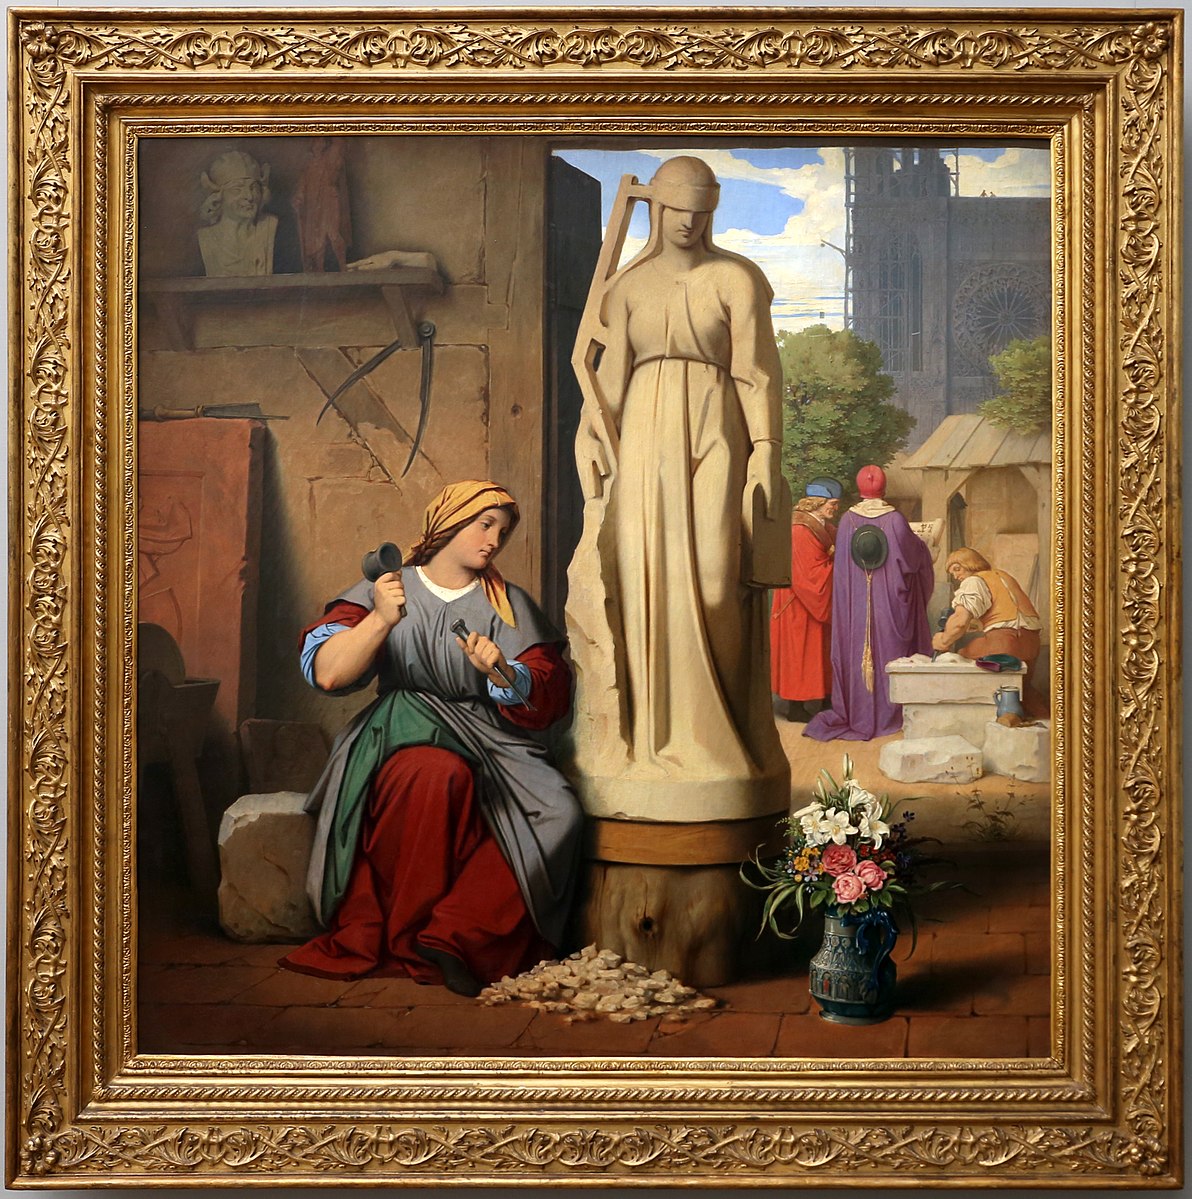 Moritz von schwind, sabina von steinbach, 1844, Alte Nationalgalerie, Berlino.